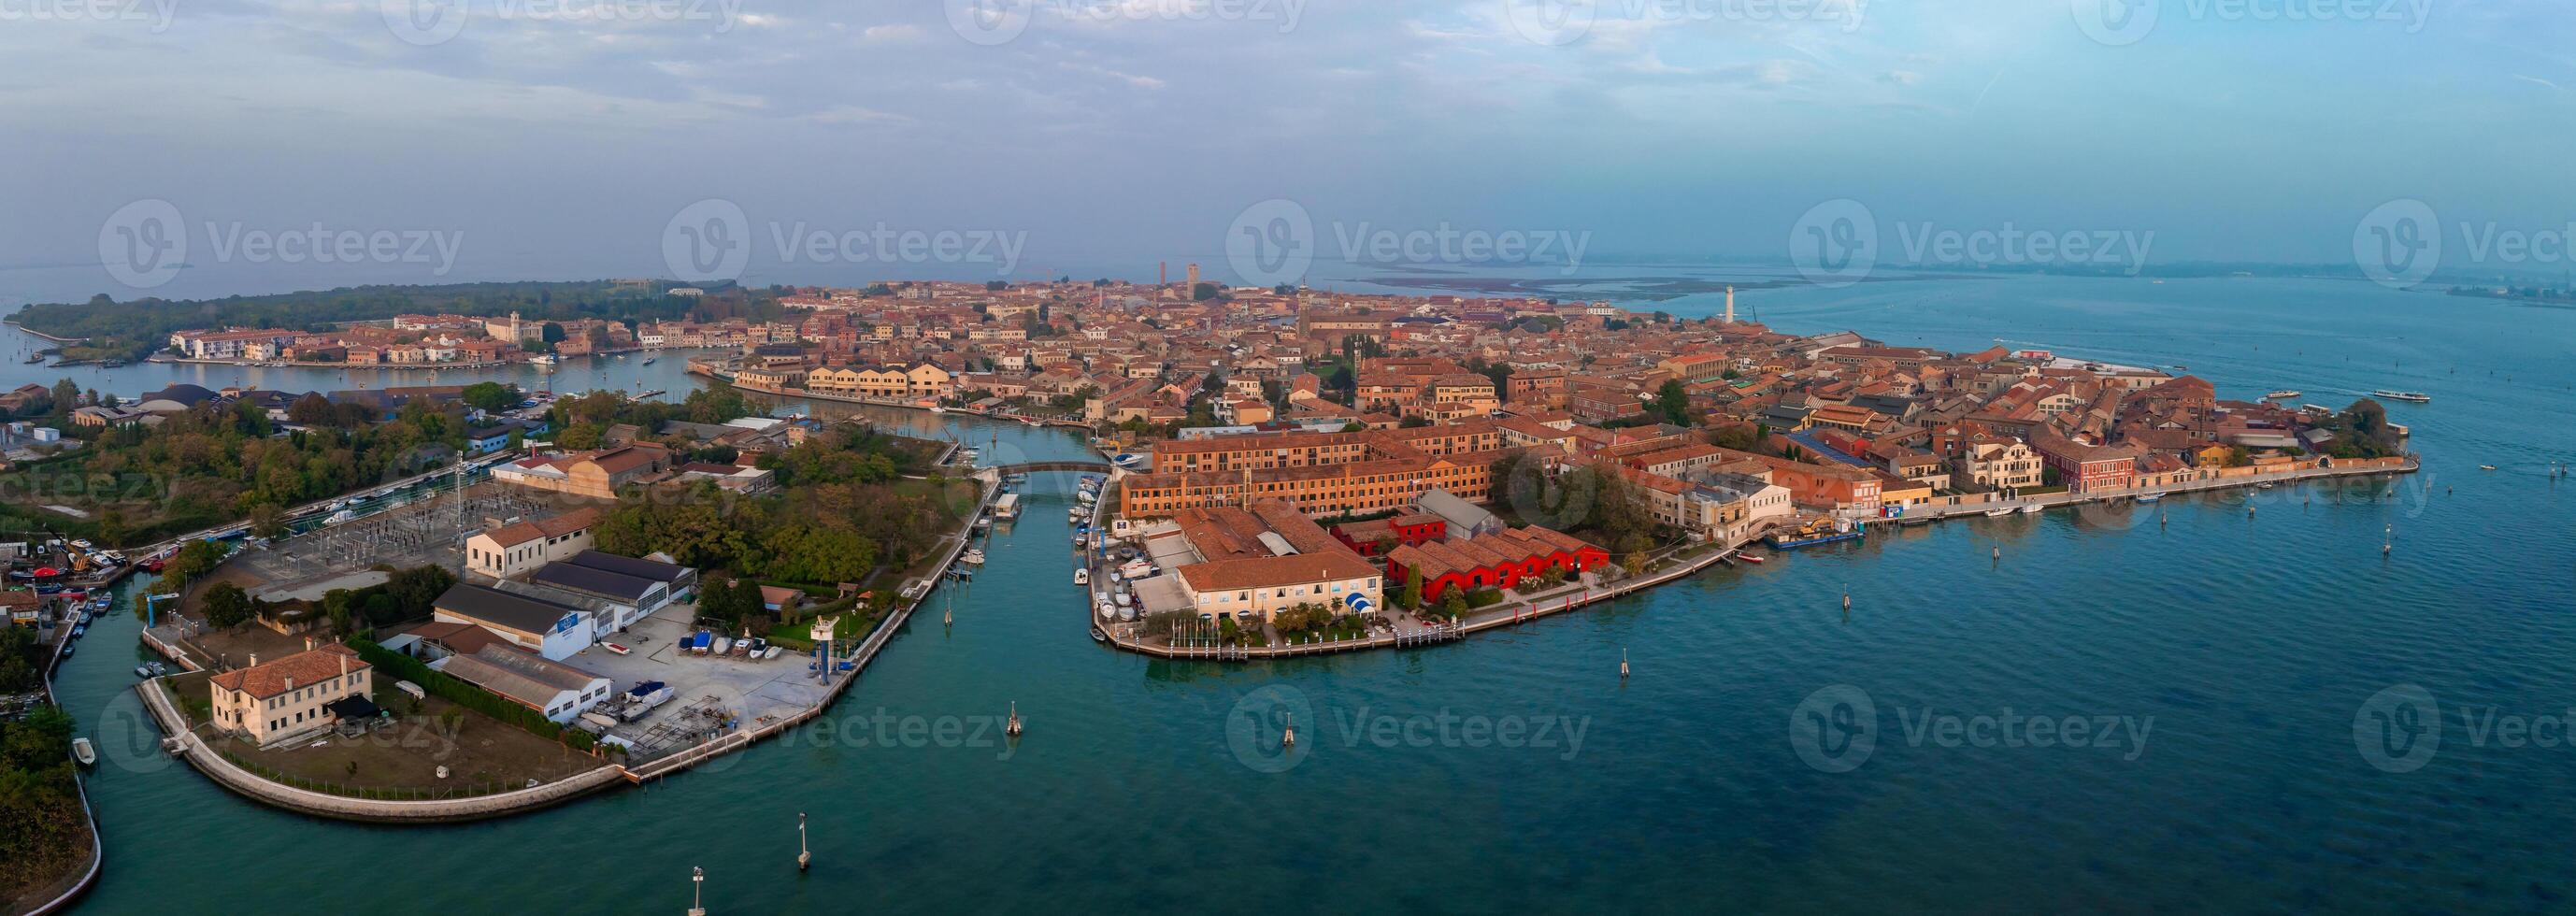 aereo Visualizza di murano isola nel Venezia laguna, Italia foto